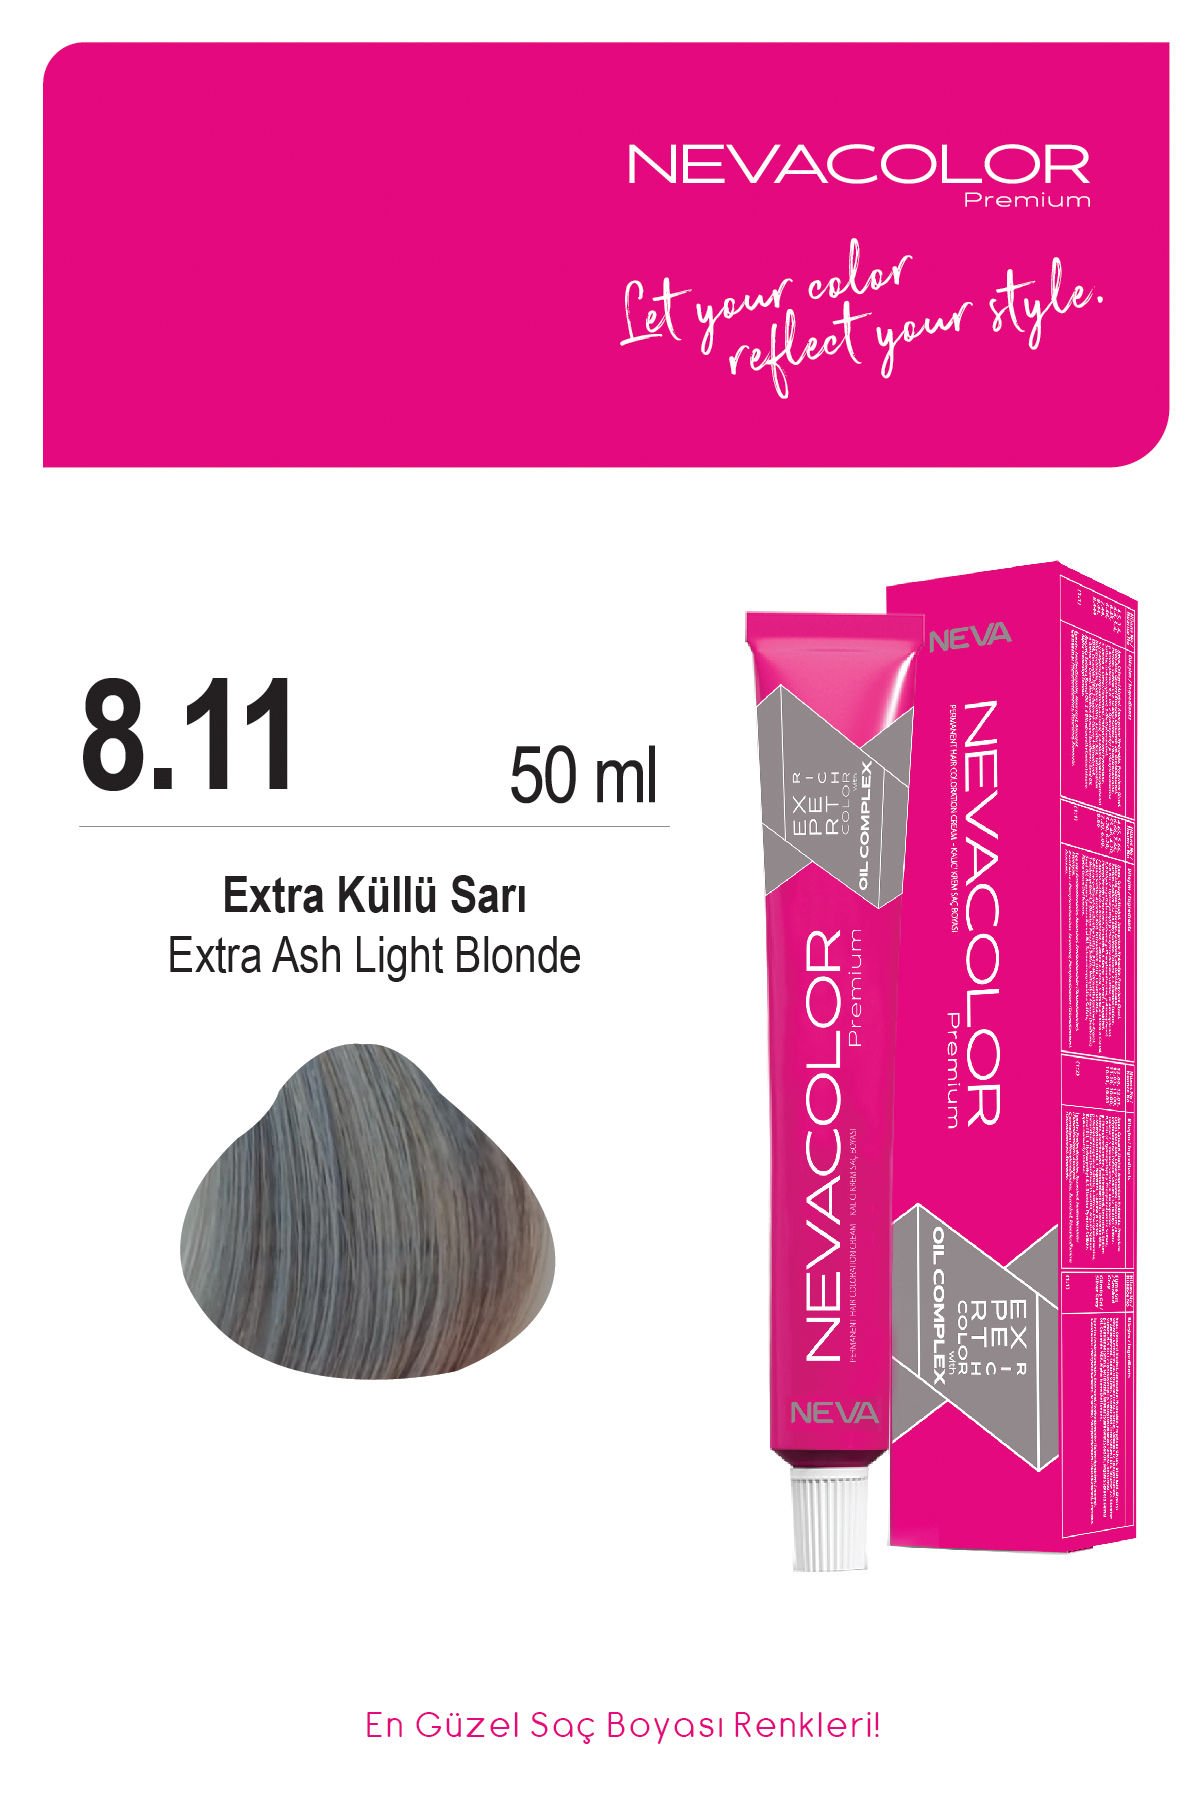 Nevacolor Premium 8.11 Ekstra Küllü Sarı - Kalıcı Krem Saç Boyası 50 g Tüp